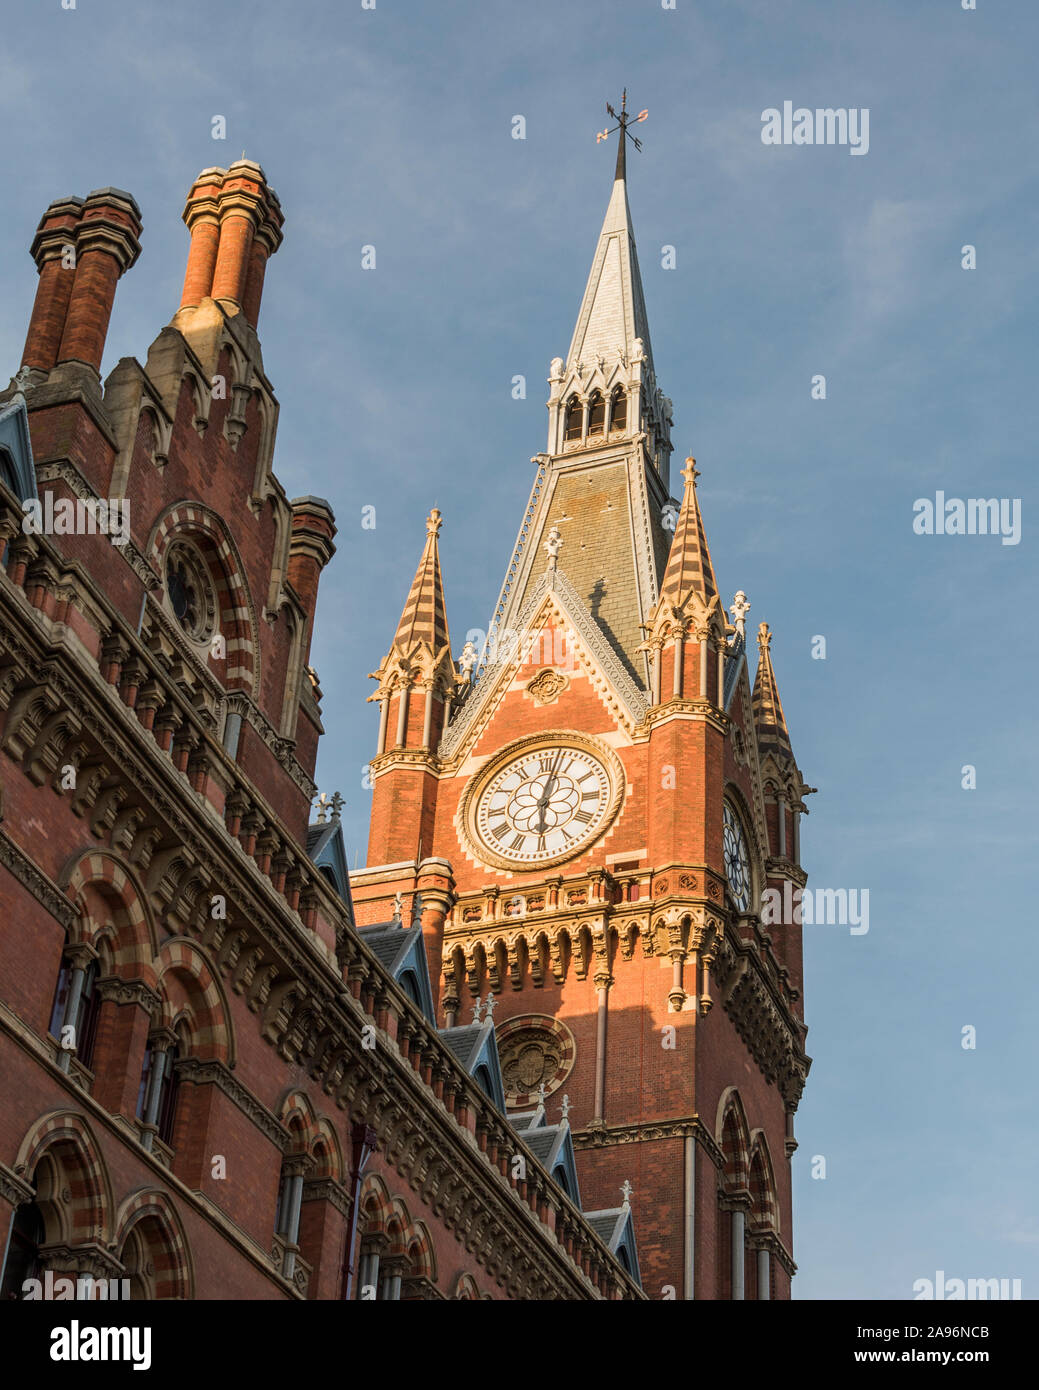 La torre del reloj de la estación ferroviaria de St Pancras, en Londres. Foto de stock